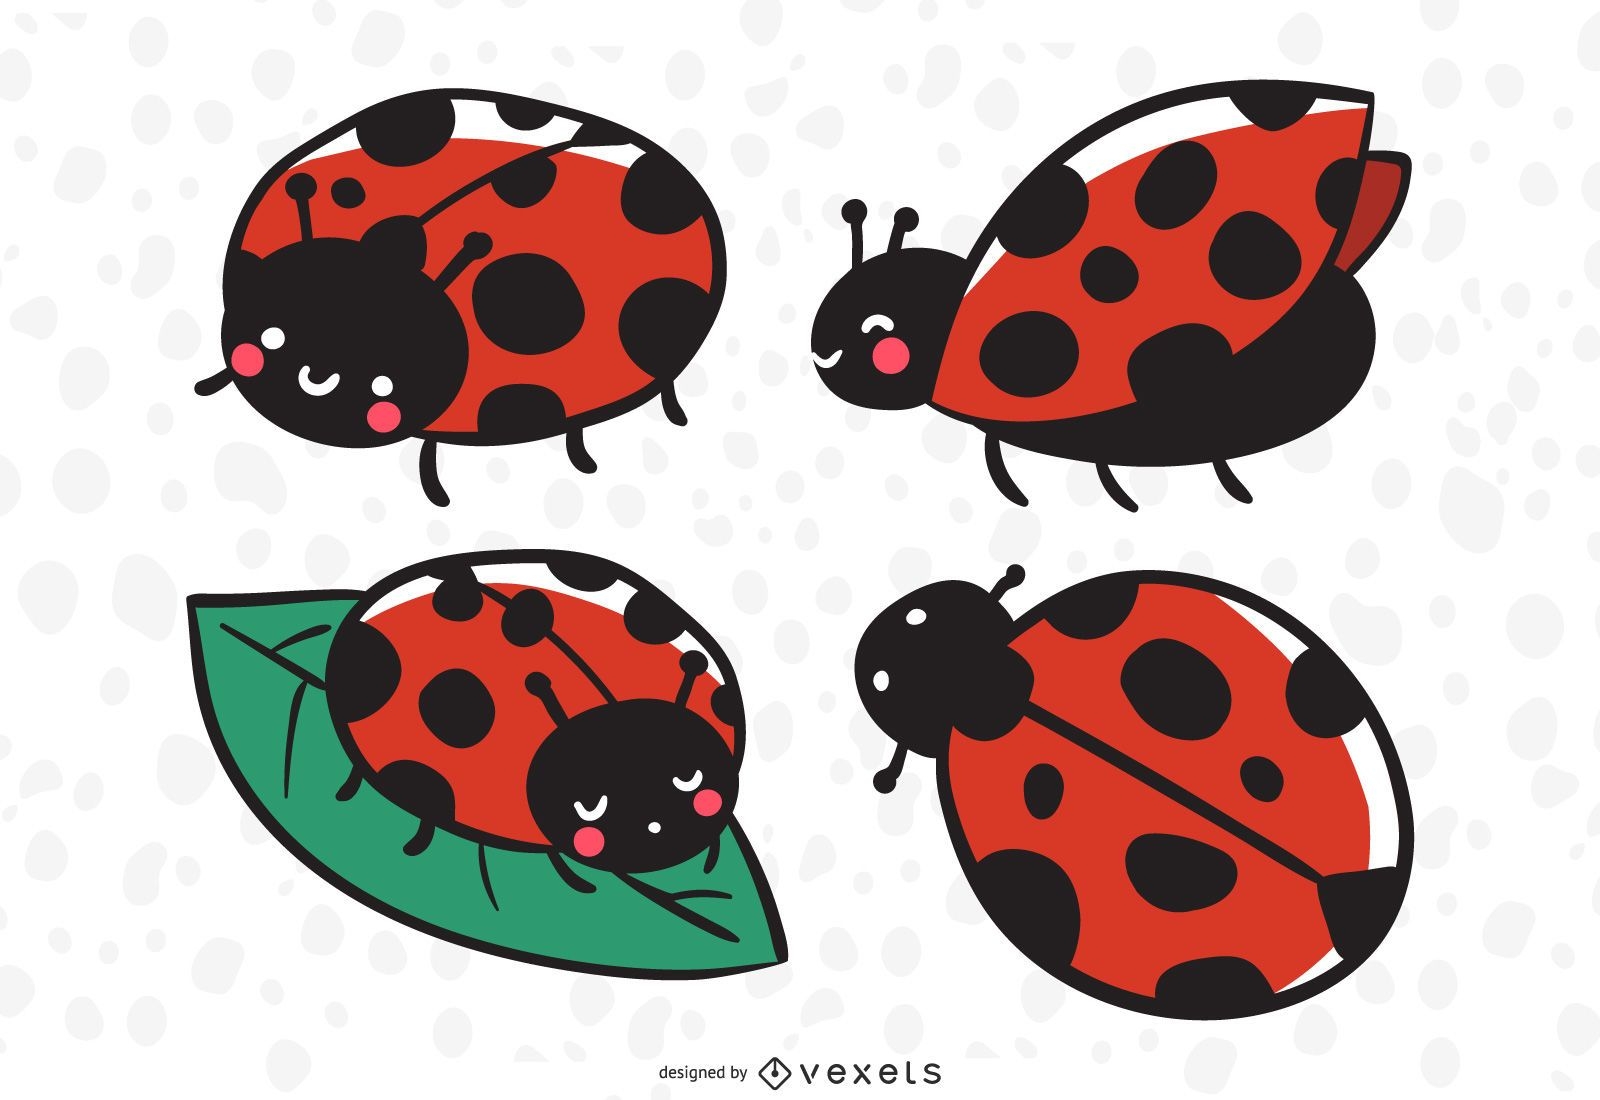 Cute Ladybug Illustration